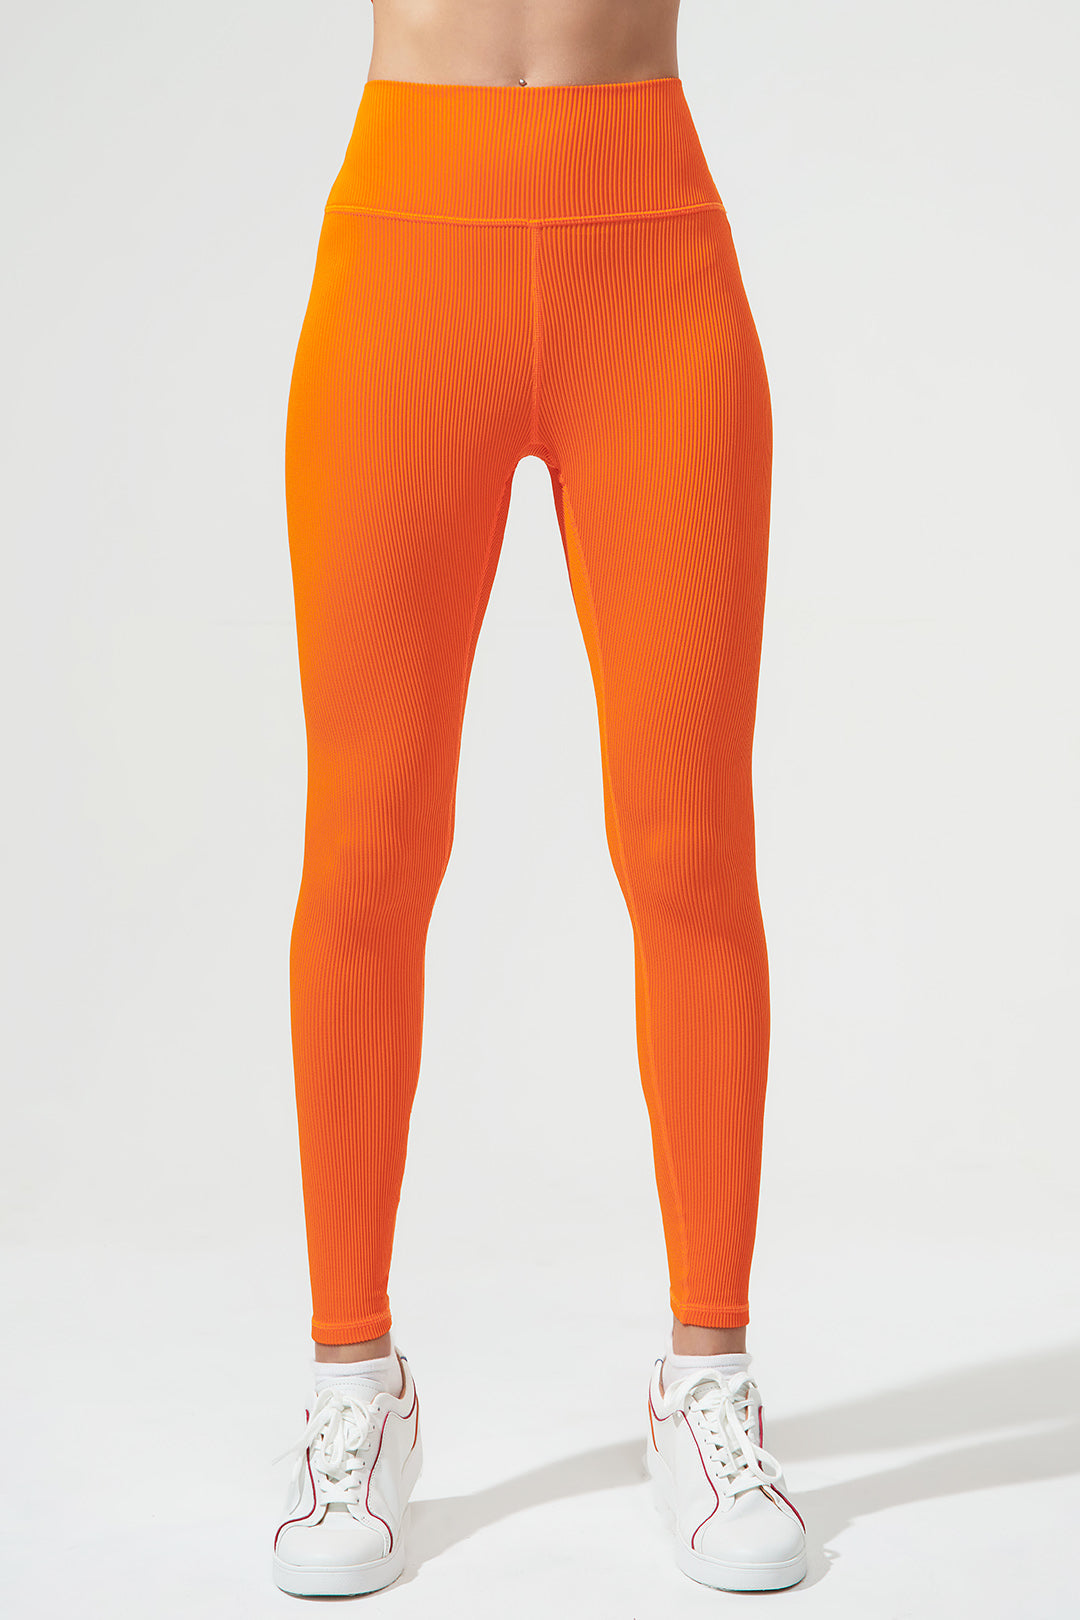 Women's Nike Air High-Rise Full Length Tight Leggings M Burnt Orange | eBay